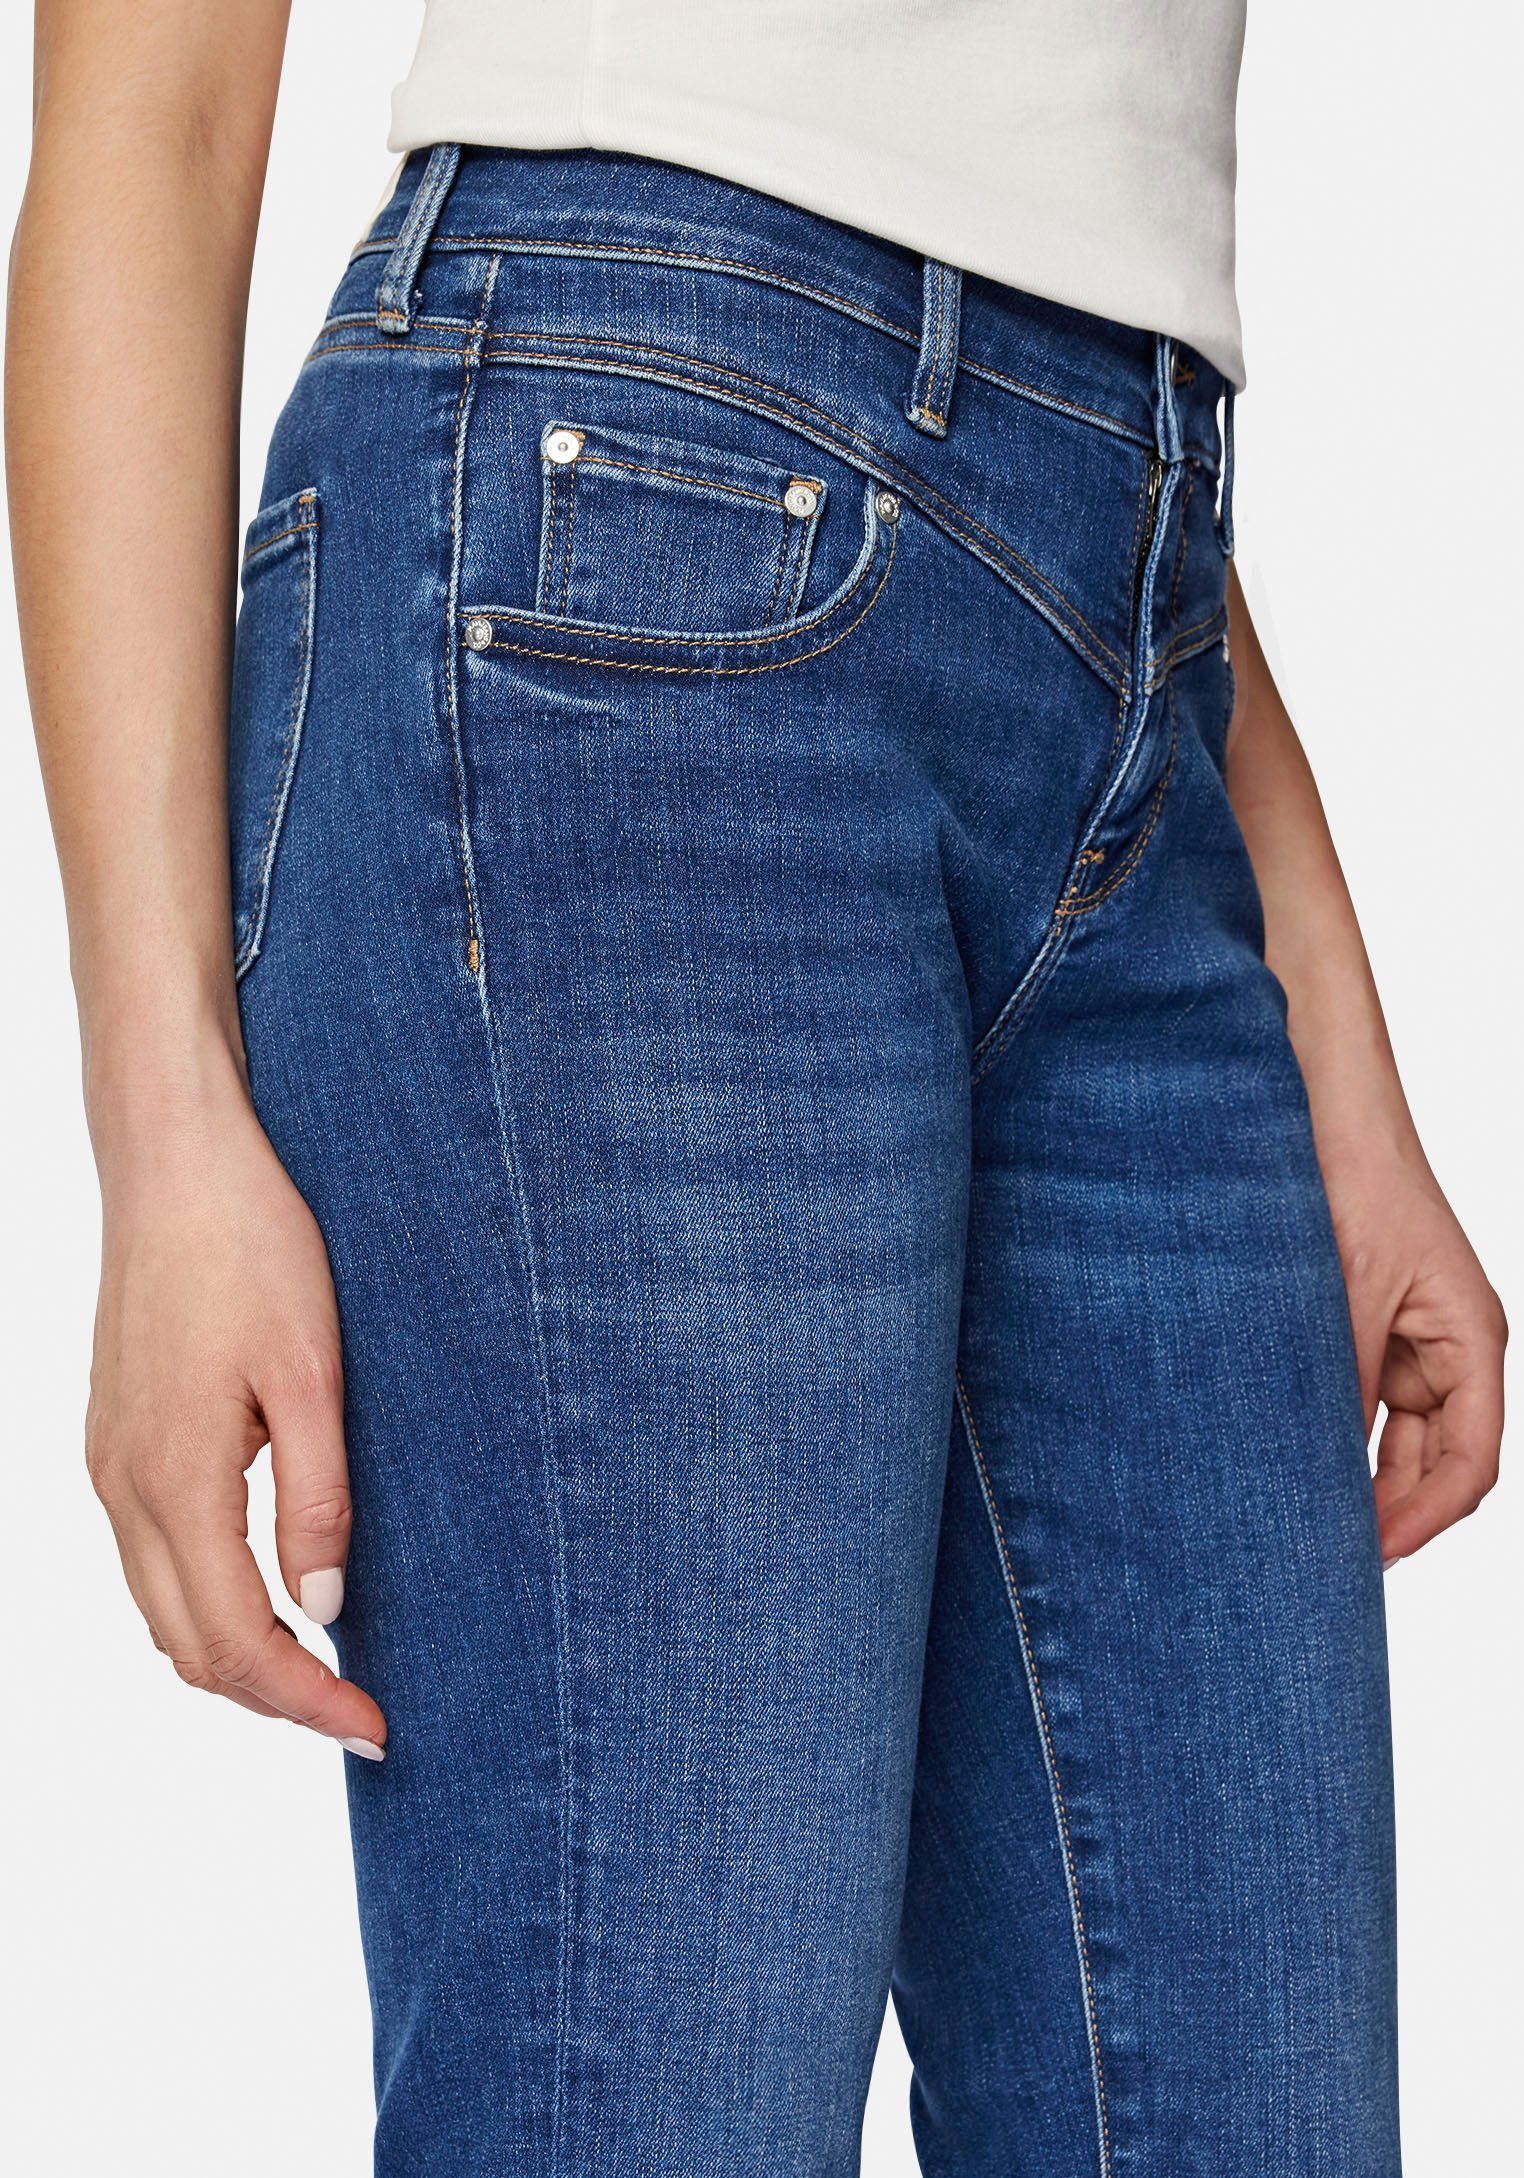 Slim-fit-Jeans trageangenehmer dank mid blue shaded Verarbeitung (mid Mavi hochwertiger blue) Stretchdenim